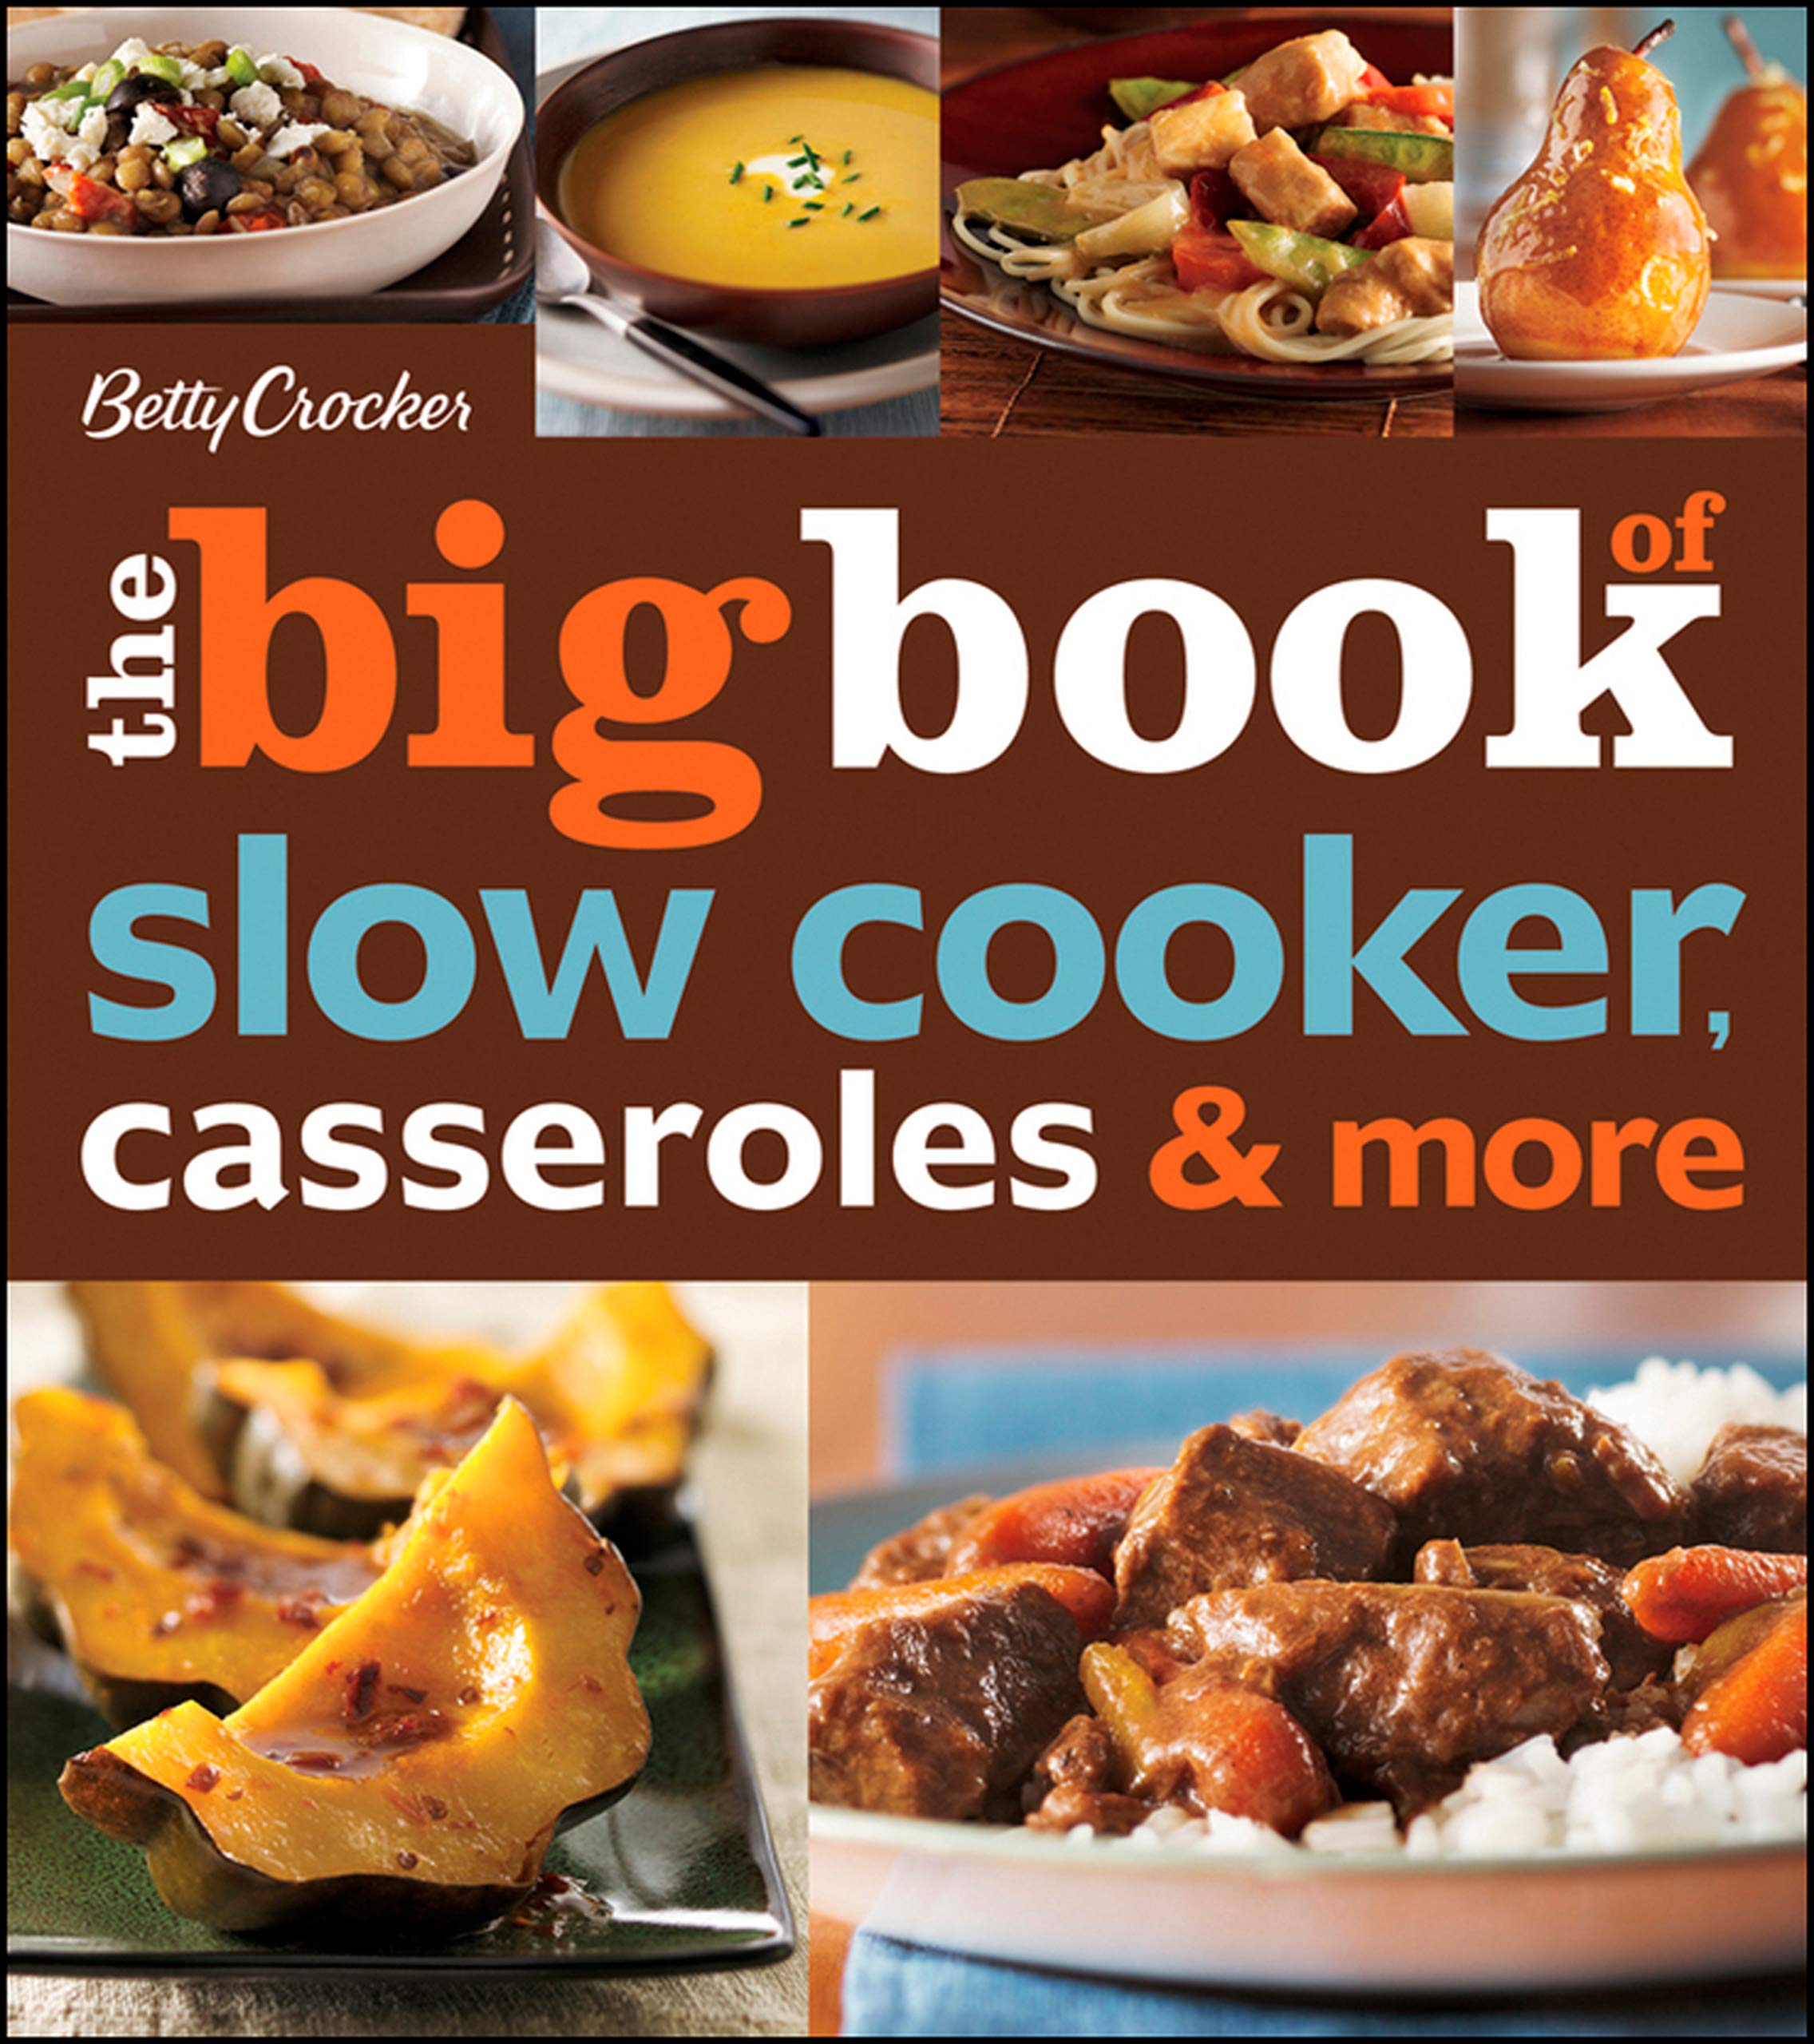 Betty Crocker The Big Book Of Slow Cooker, Casseroles & More (Betty Crocker Big Book 3)